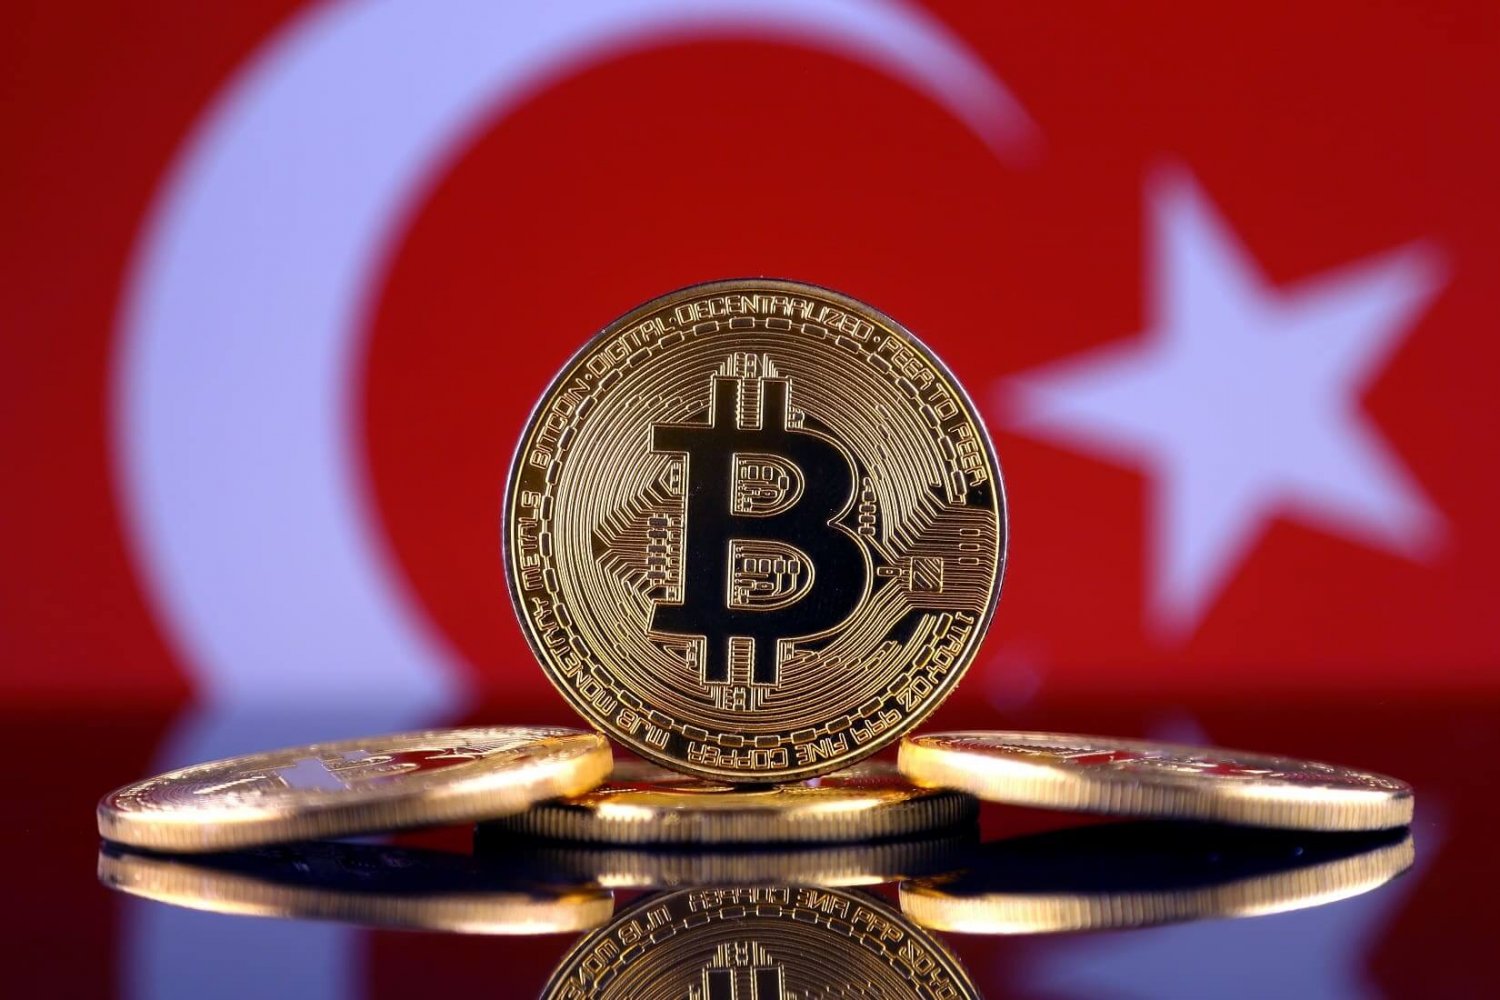 Turkey's stance on Bitcoin